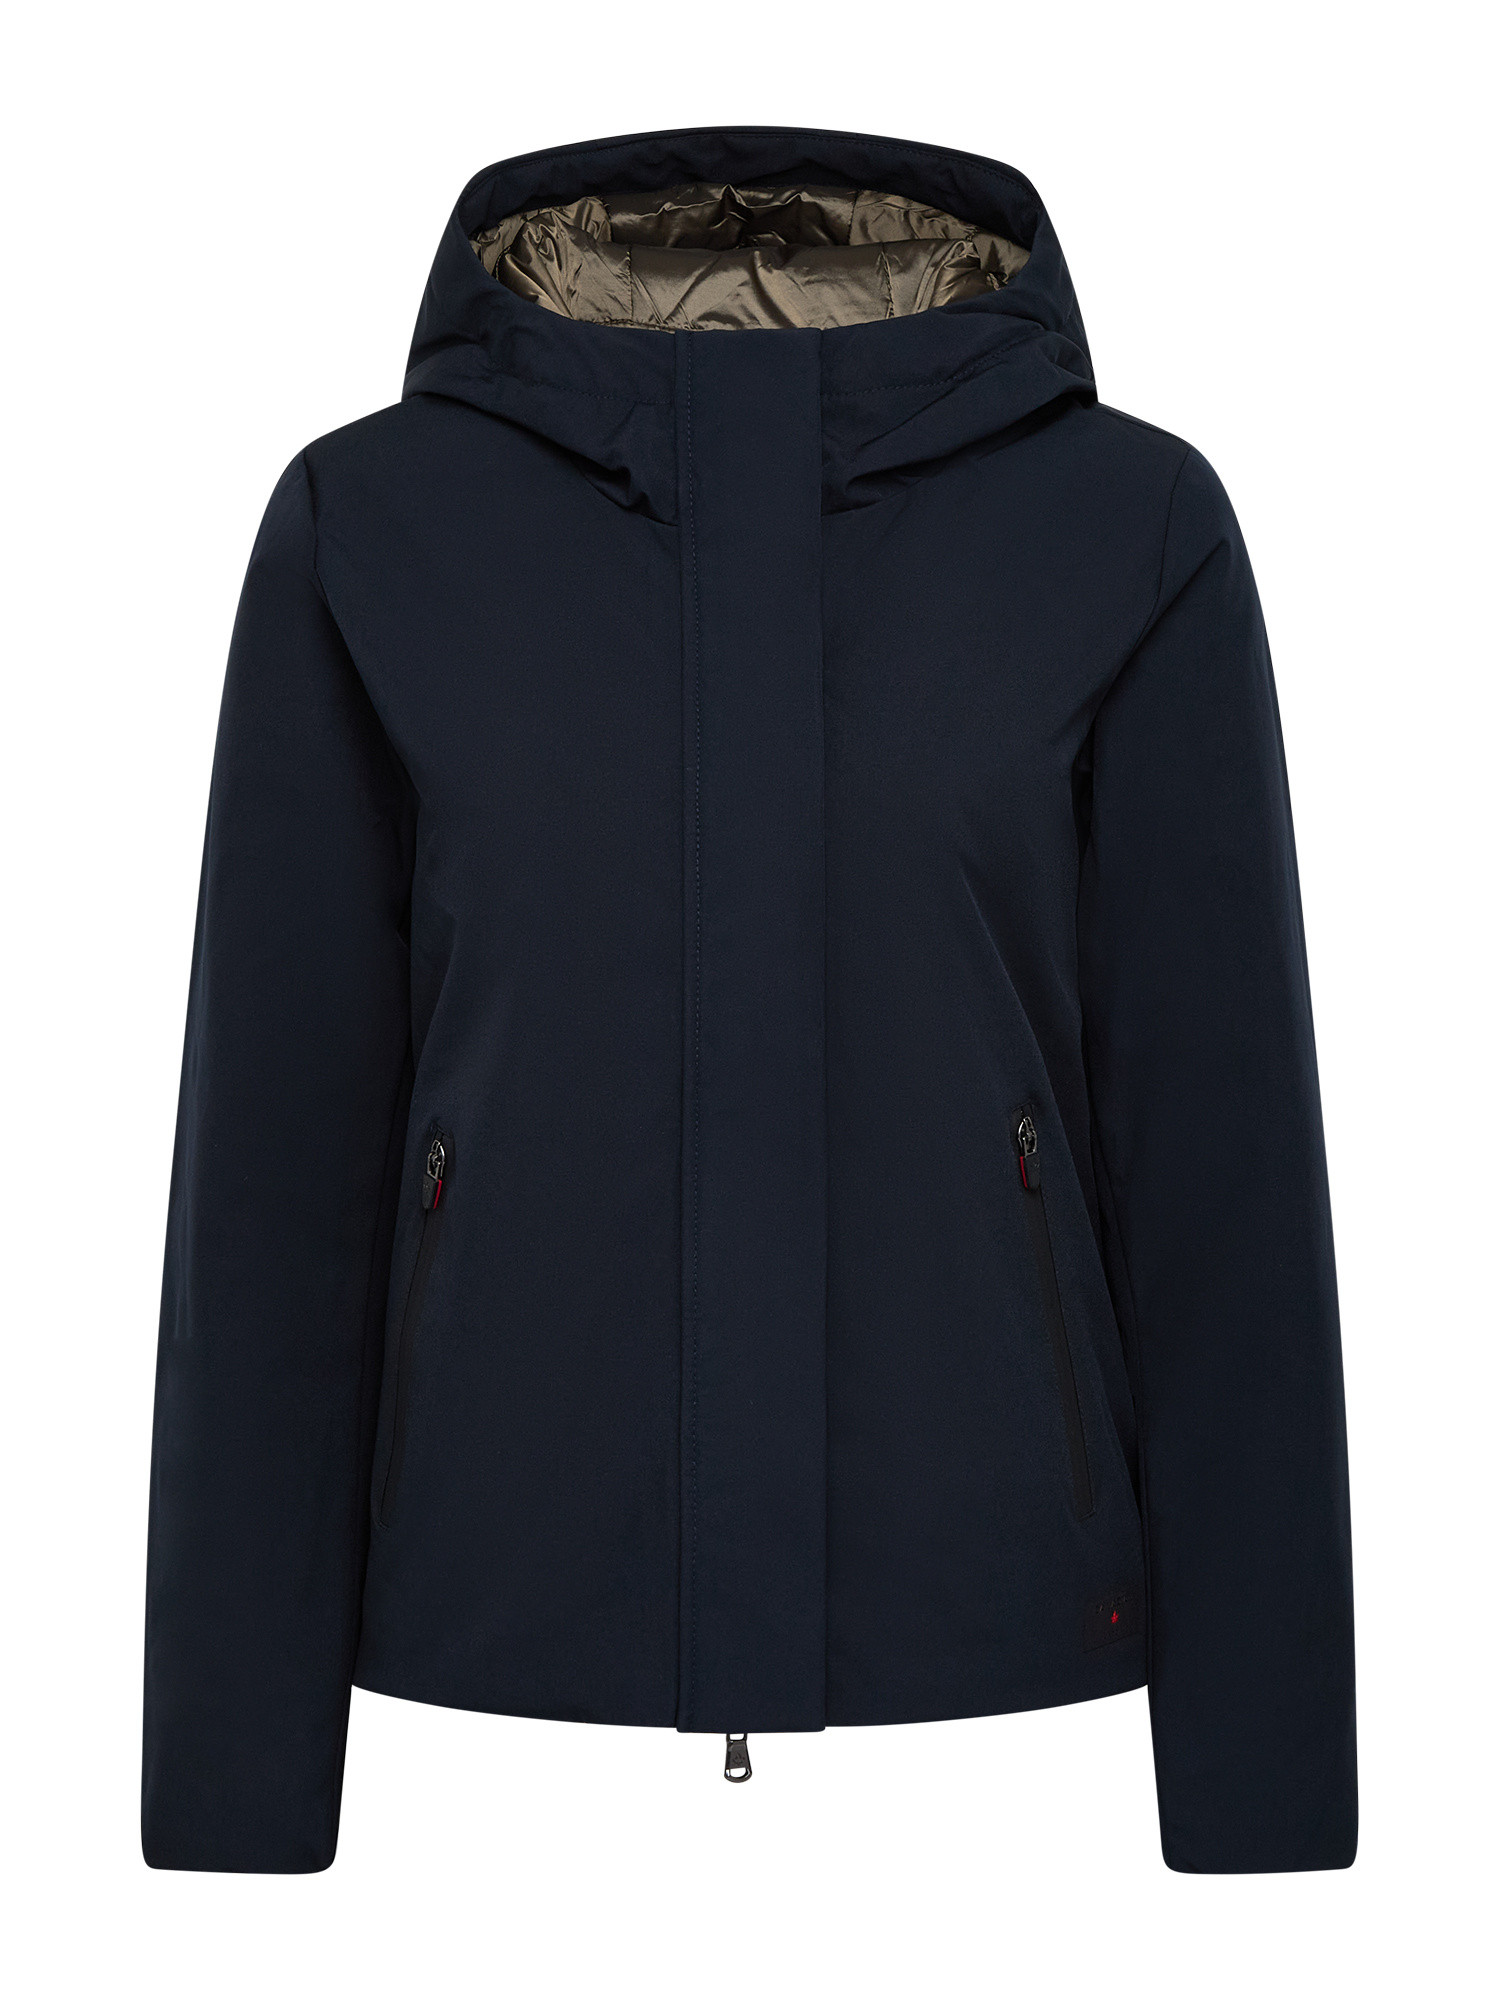 Canadian - Soft zip Jacket, Dark Blue, large image number 0